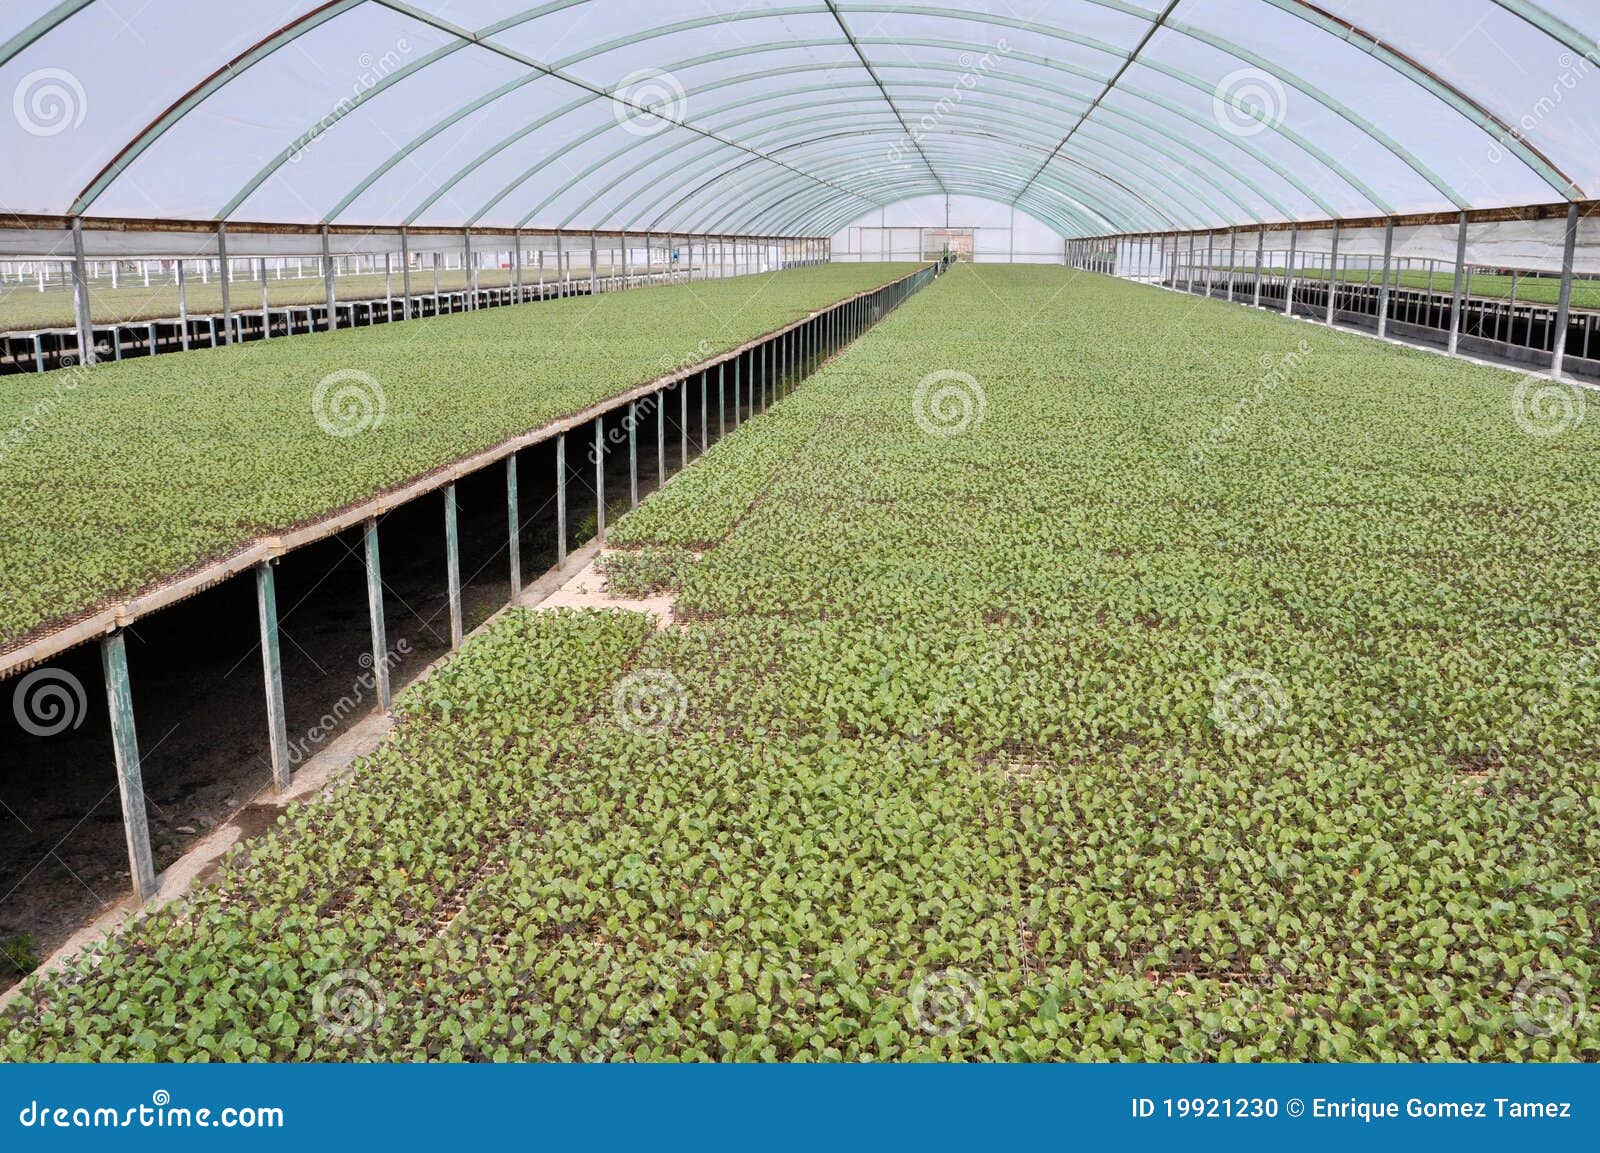 seedlings in greenhouse